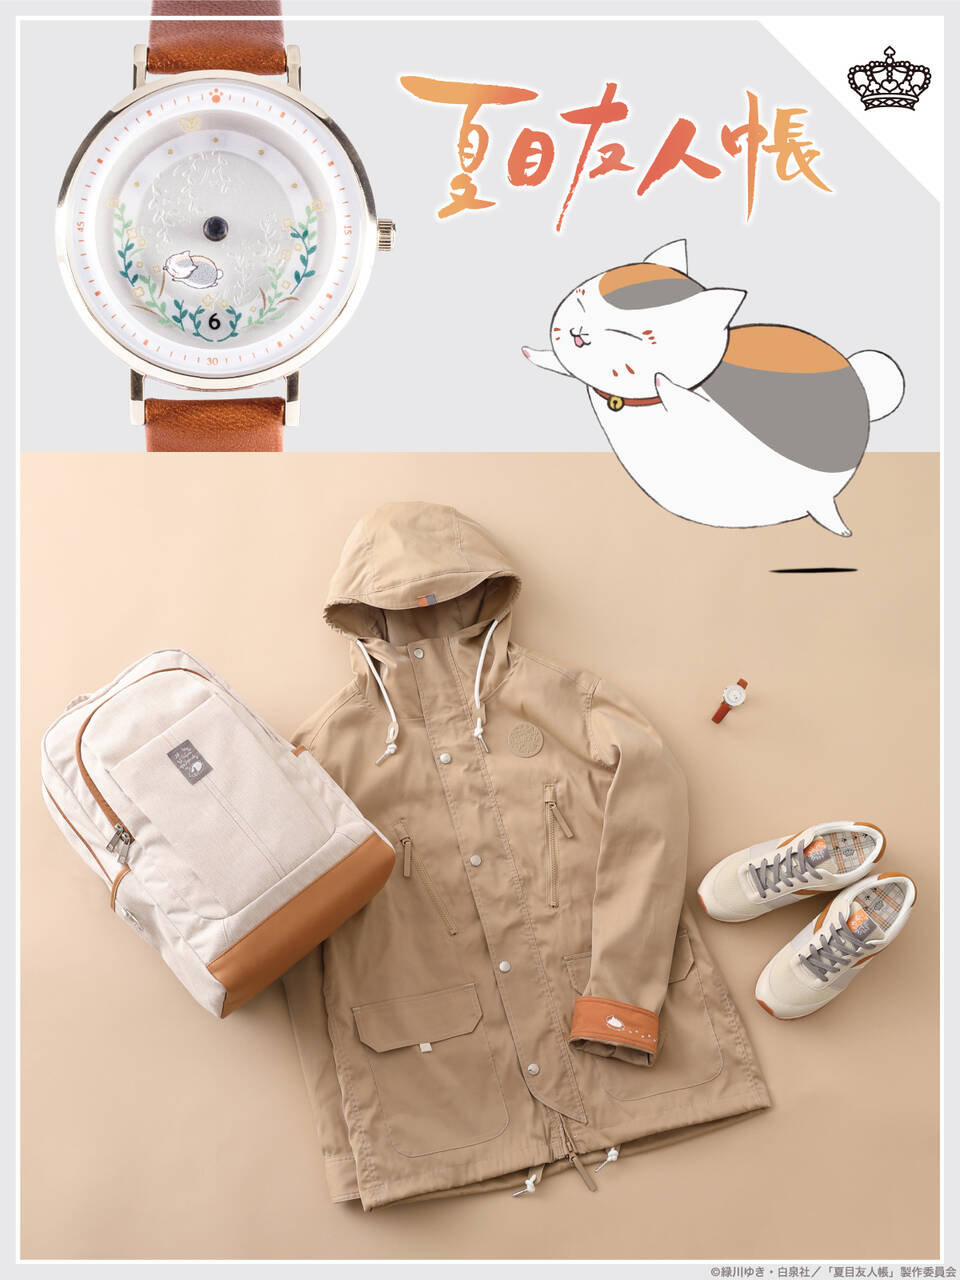 夏目友人帳 コラボの時計やバッグなどの新作グッズが発売 大人カジュアルなアイテムで普段使いにぴったり Numan